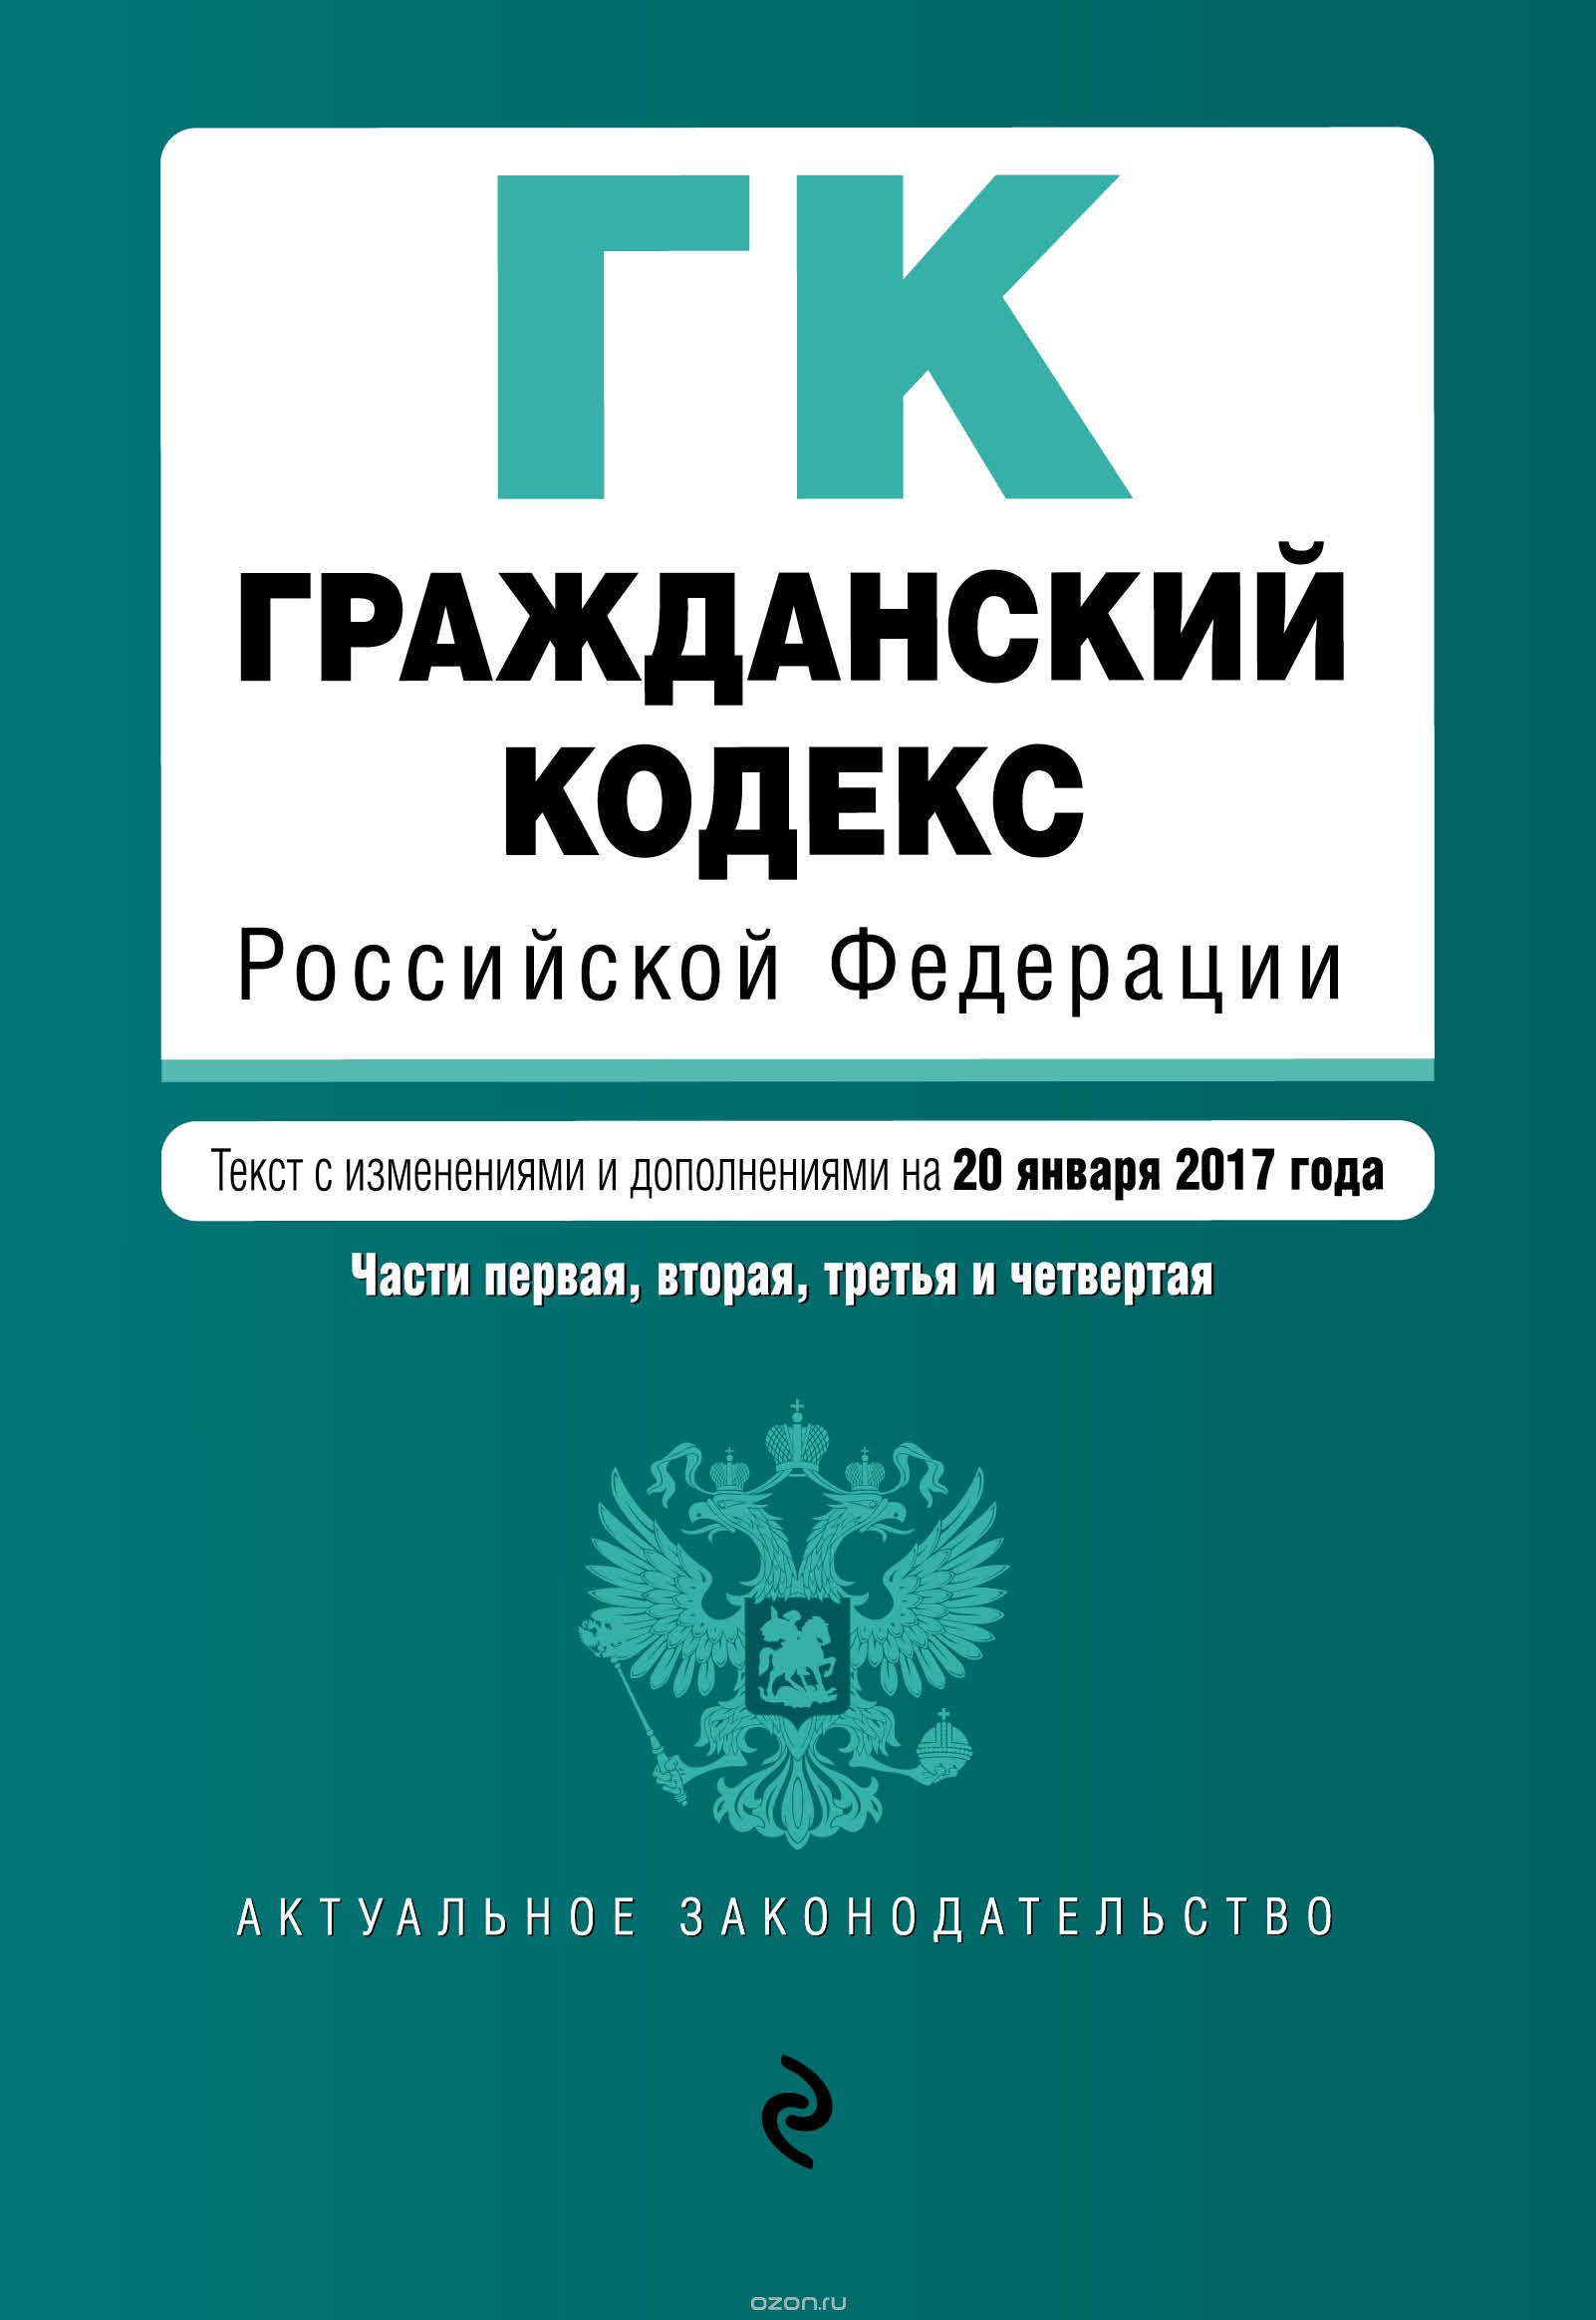 Скачать книгу "Гражданский кодекс Российской Федерации. Части 1, 2, 3 и 4"